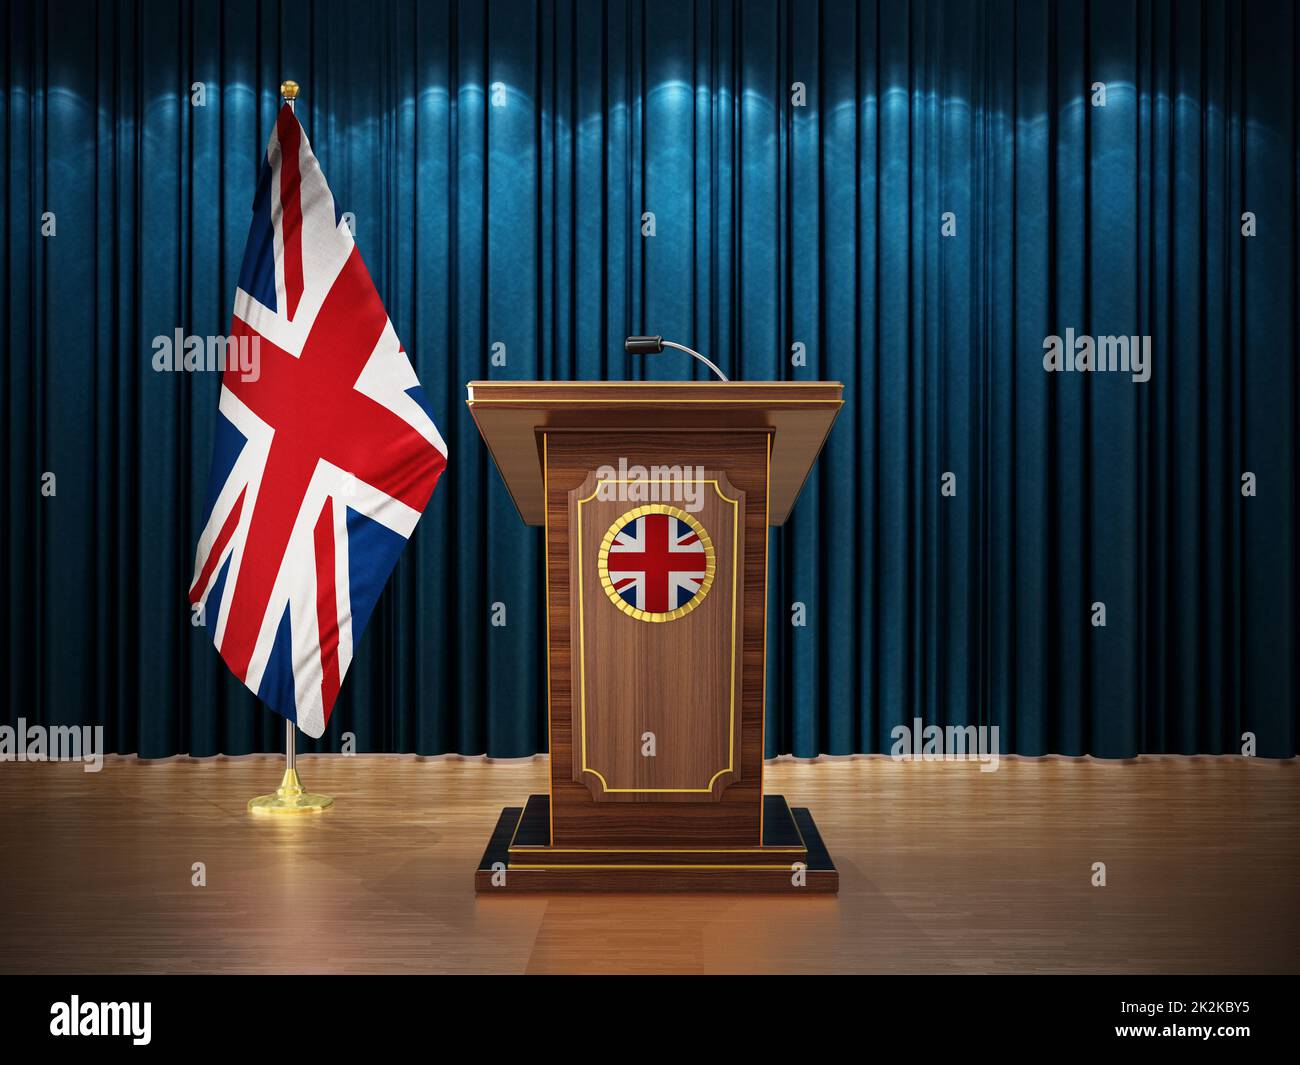 Conférence de presse avec drapeau britannique et lutrin contre le rideau bleu. 3D illustration Banque D'Images